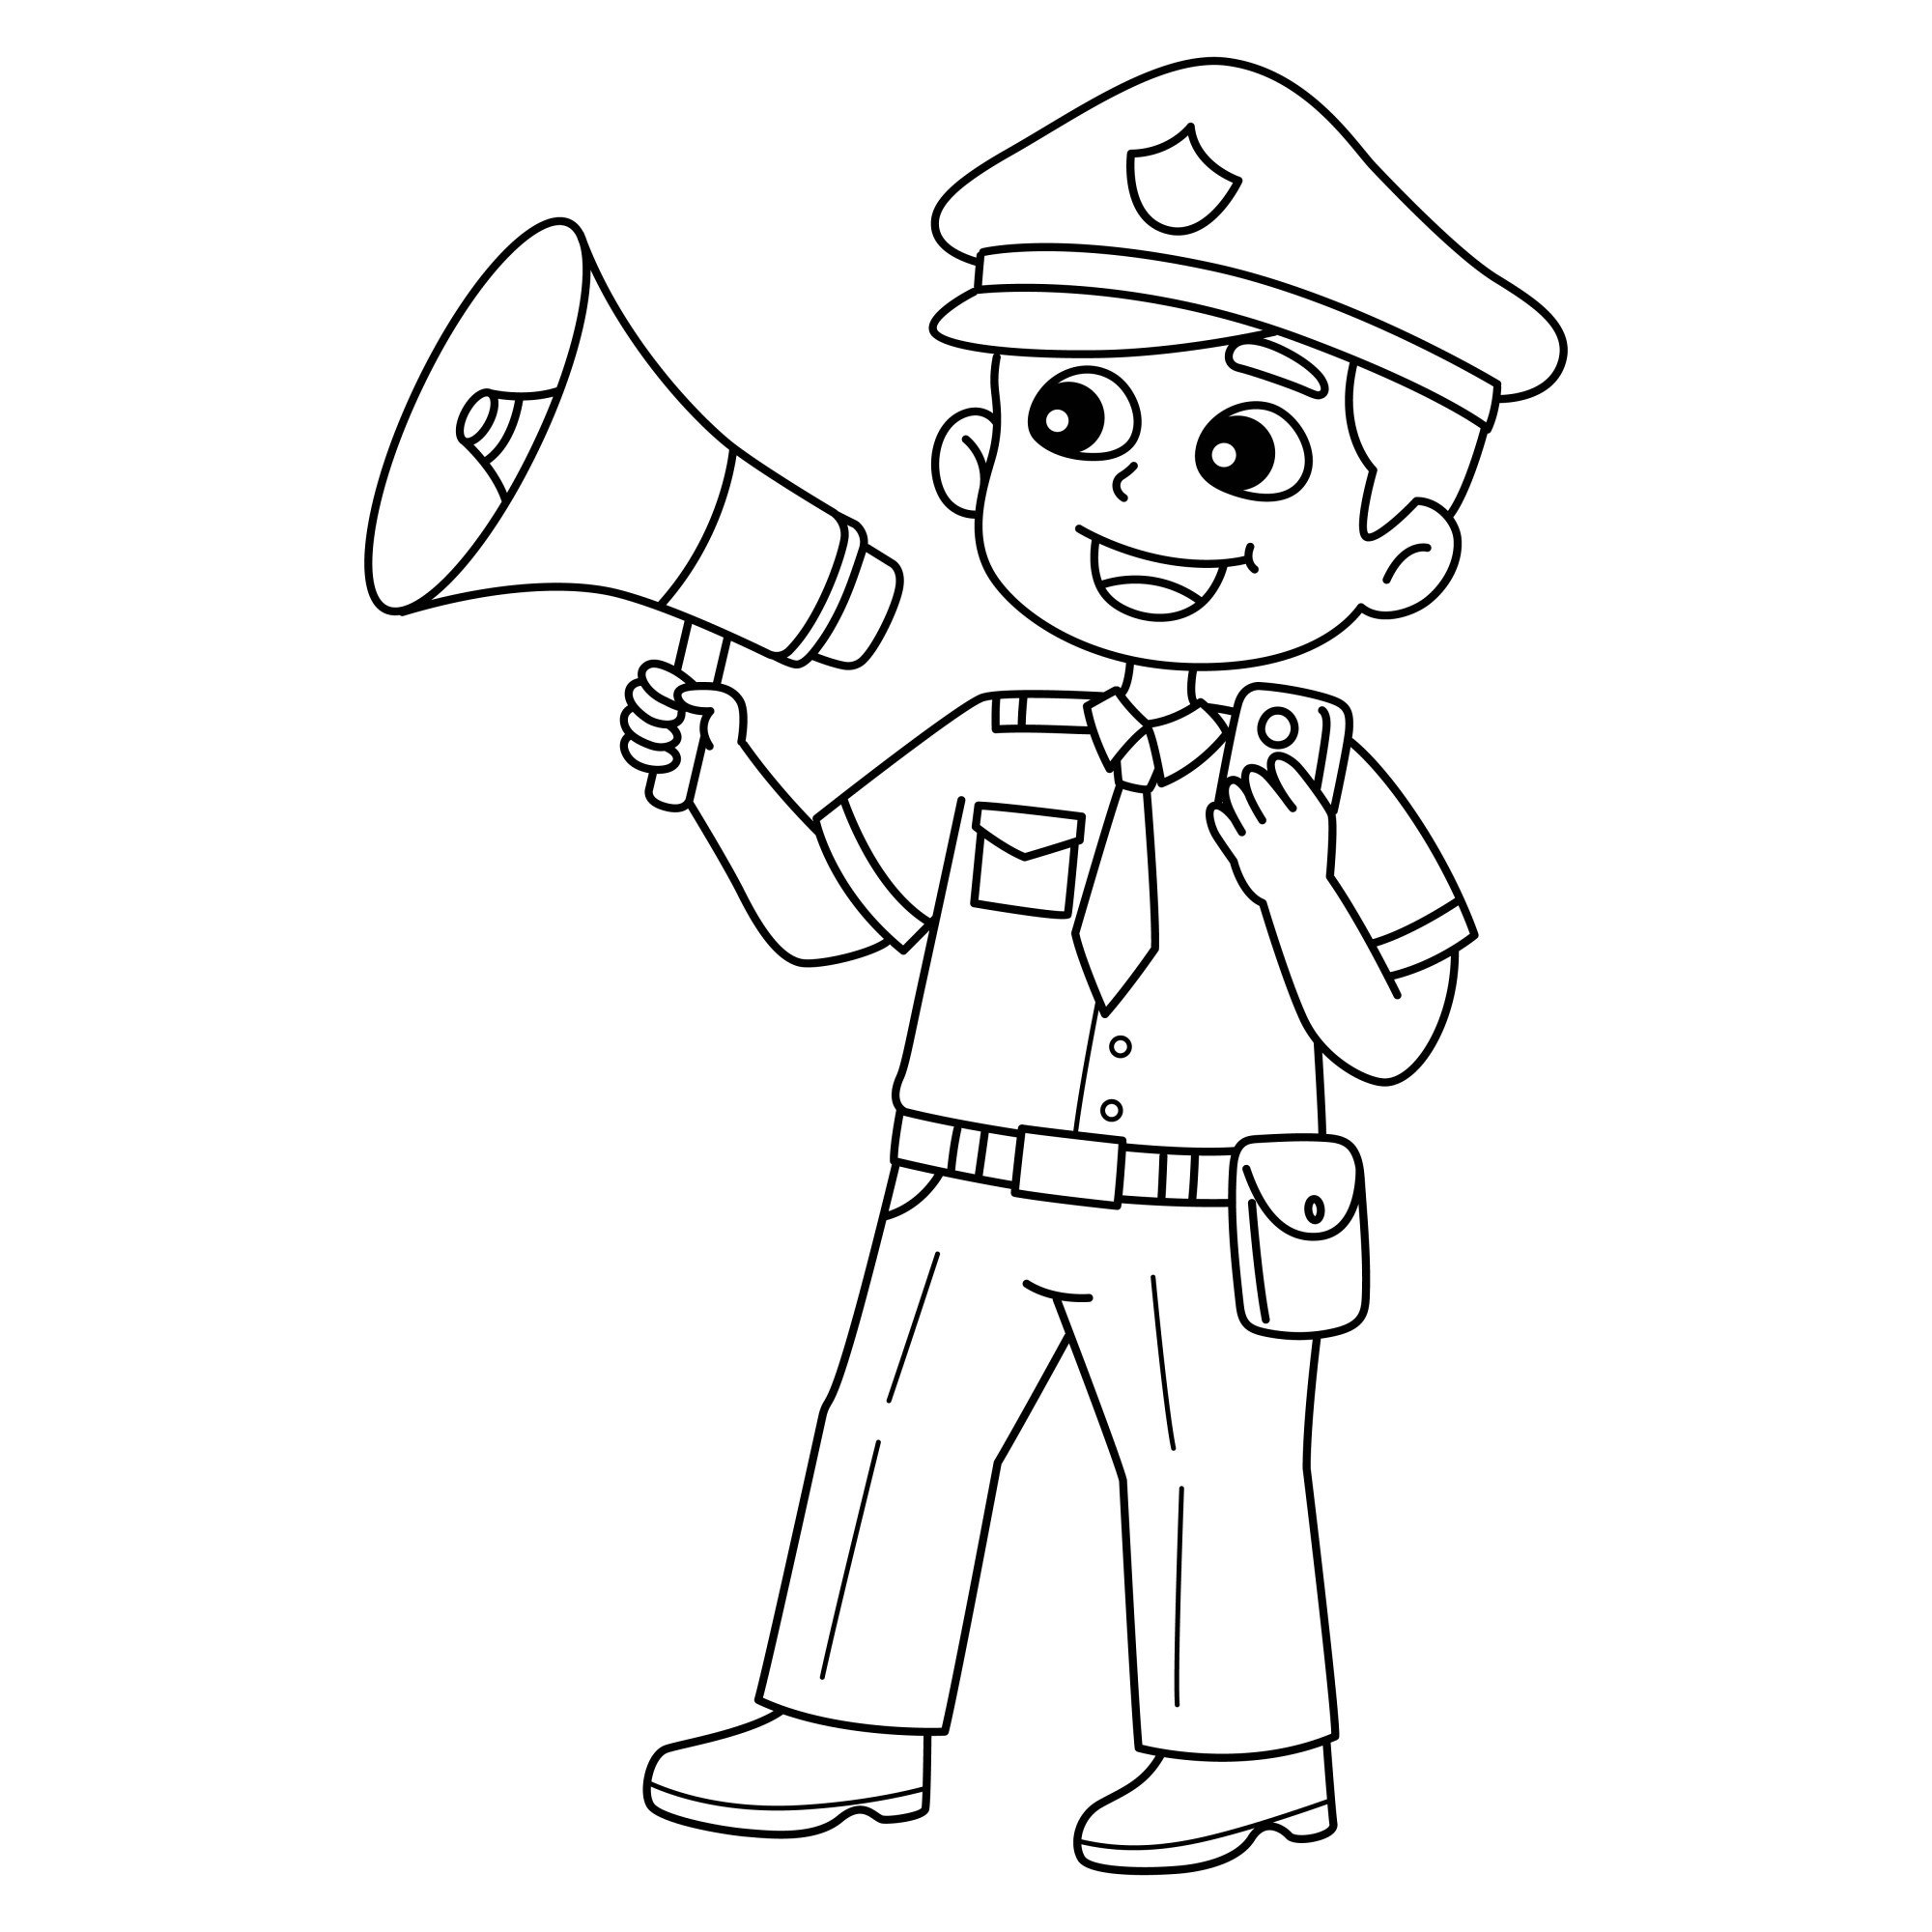 Раскраска для детей: полицейский с громкоговорителем